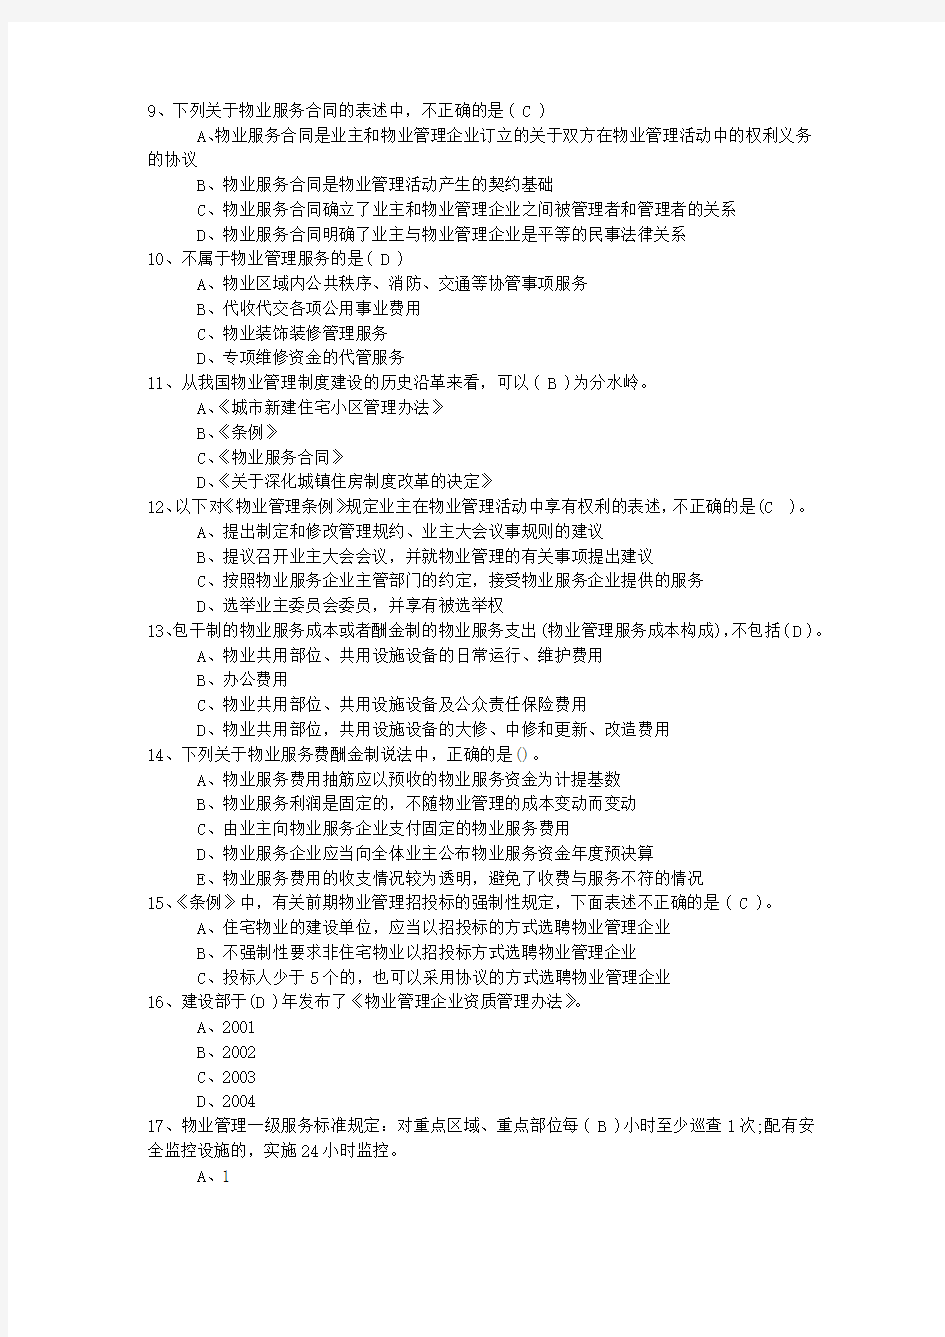 2015年湖南省物业管理师考试备考六大记忆法最新考试试题库(完整版)